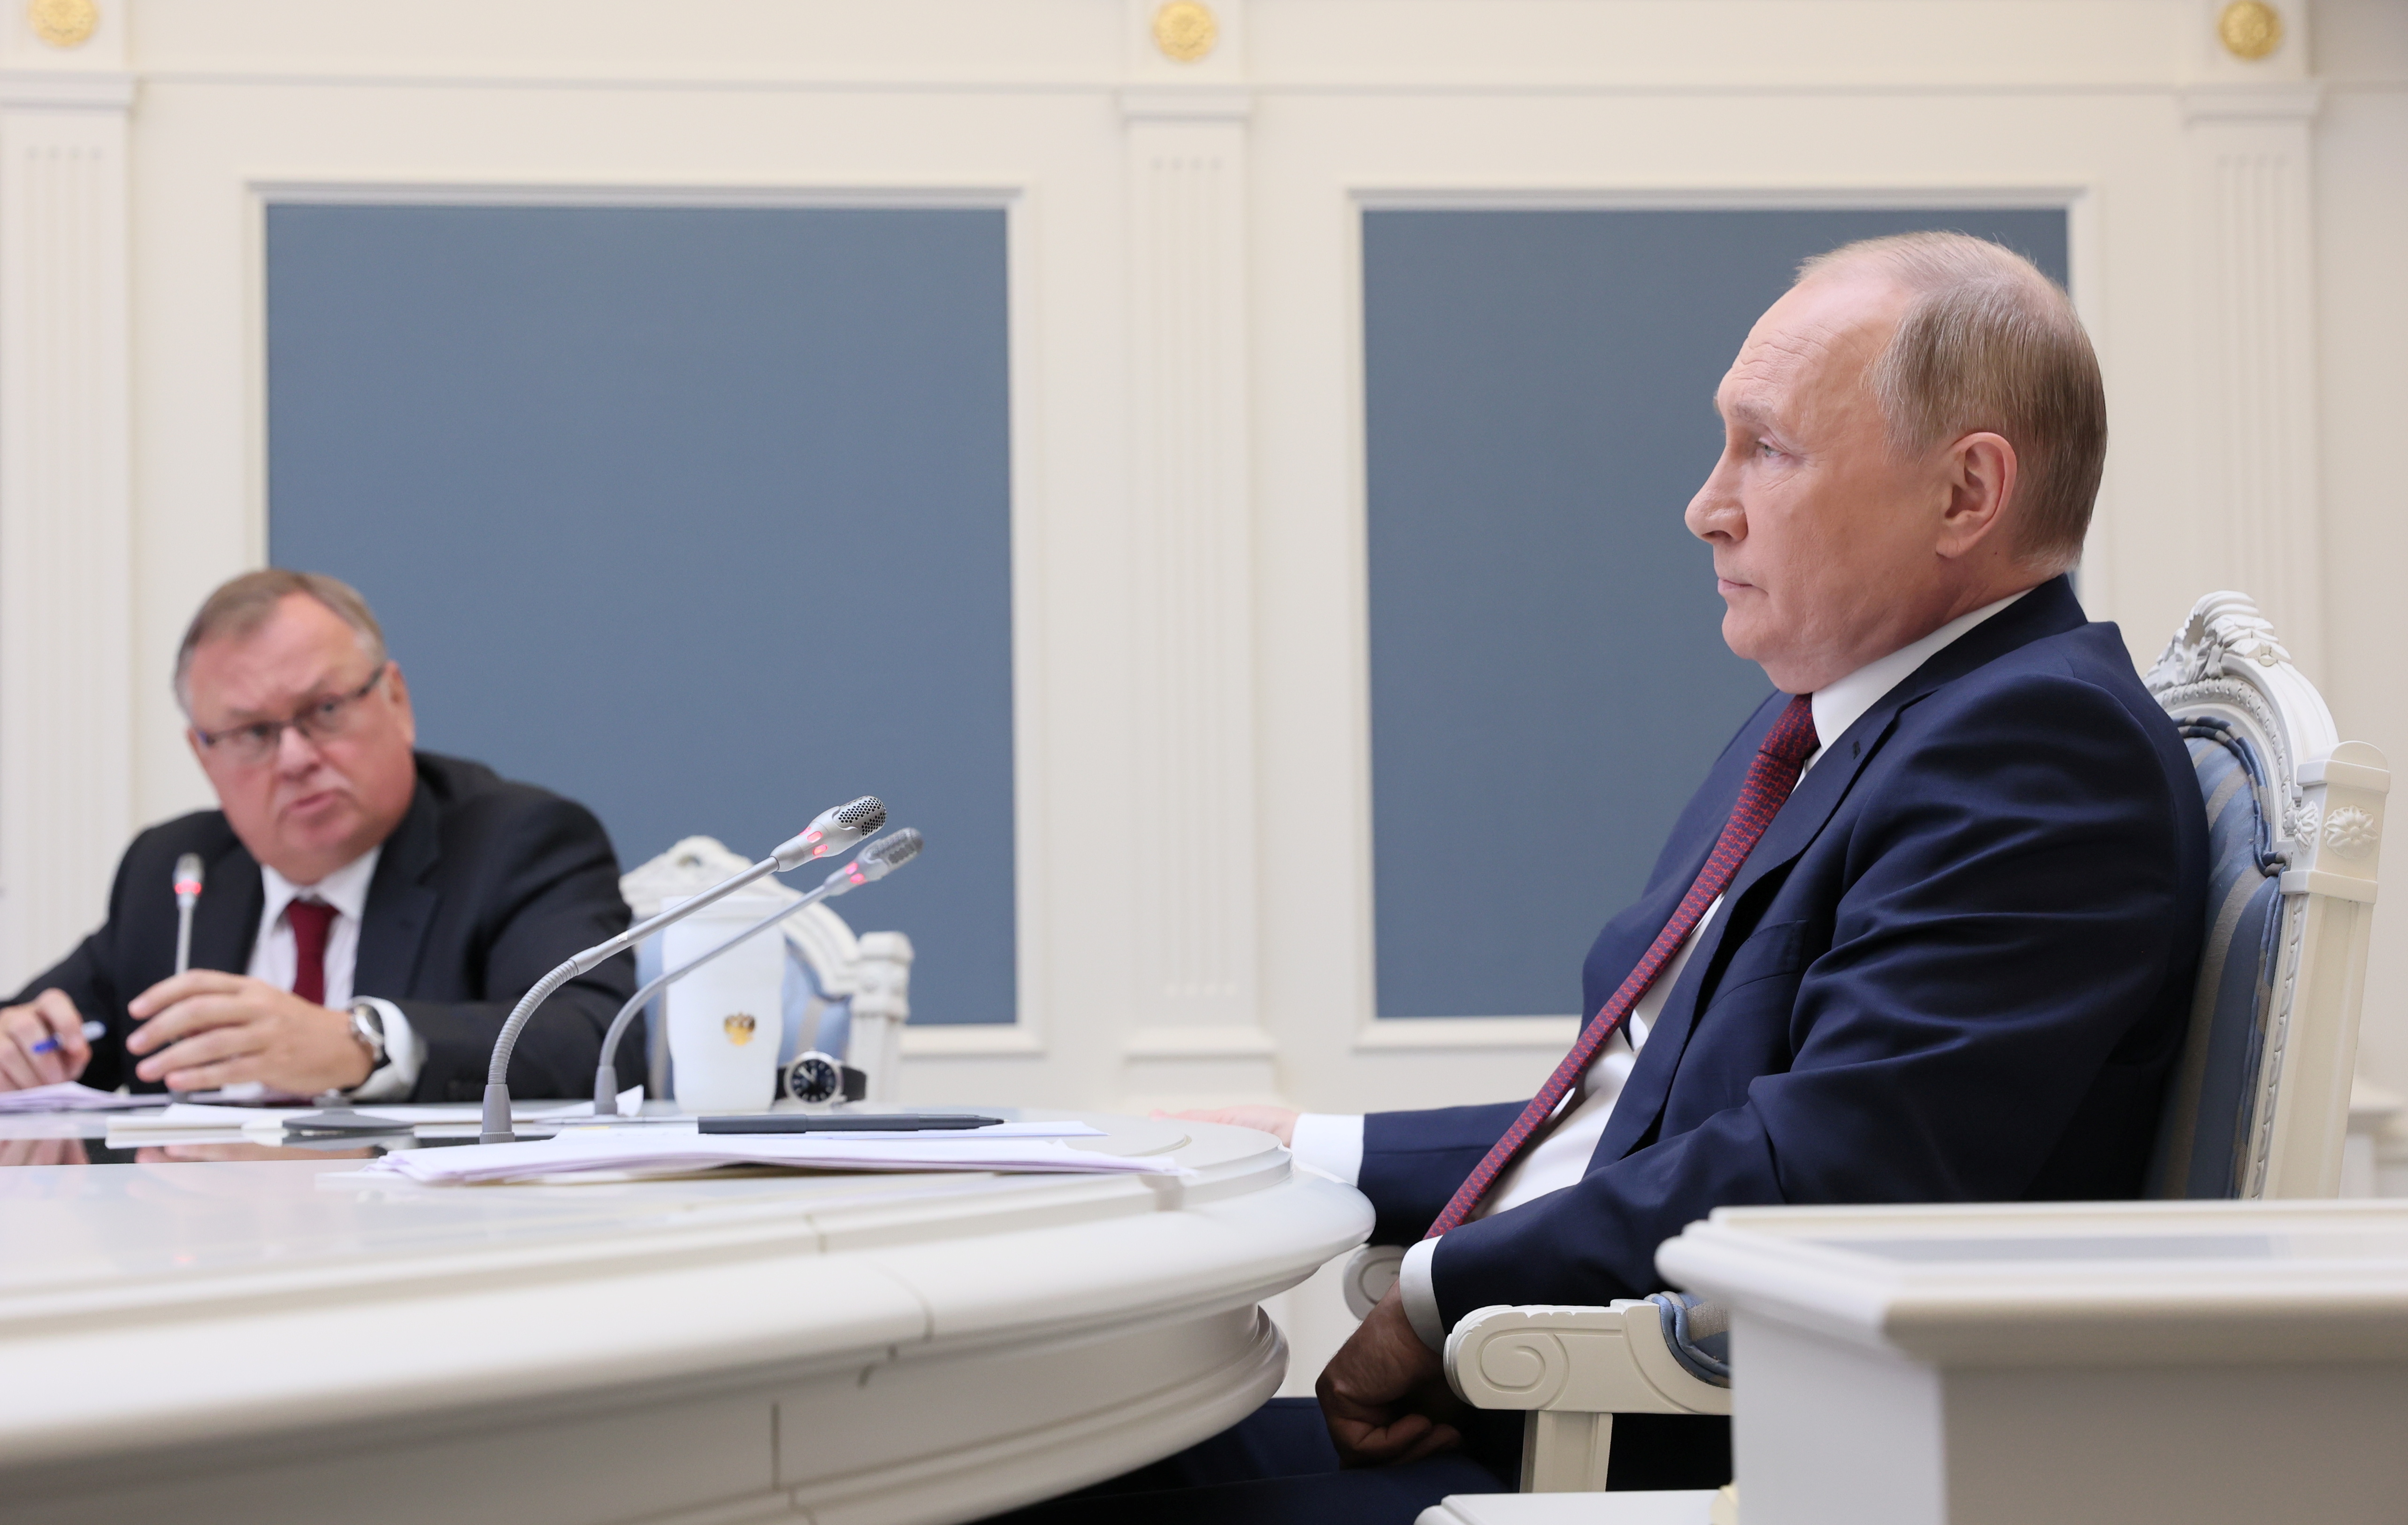 El presidente ruso, Vladimir Putin, y el director ejecutivo del banco VTB, Andrey Kostin, asisten a una sesión del Foro de inversión de capital de VTB "¡Rusia llama!" a través de una videoconferencia en Moscú, Rusia, el 30 de noviembre de 2021. Sputnik / Mikhail Metzel / Pool vía REUTERS